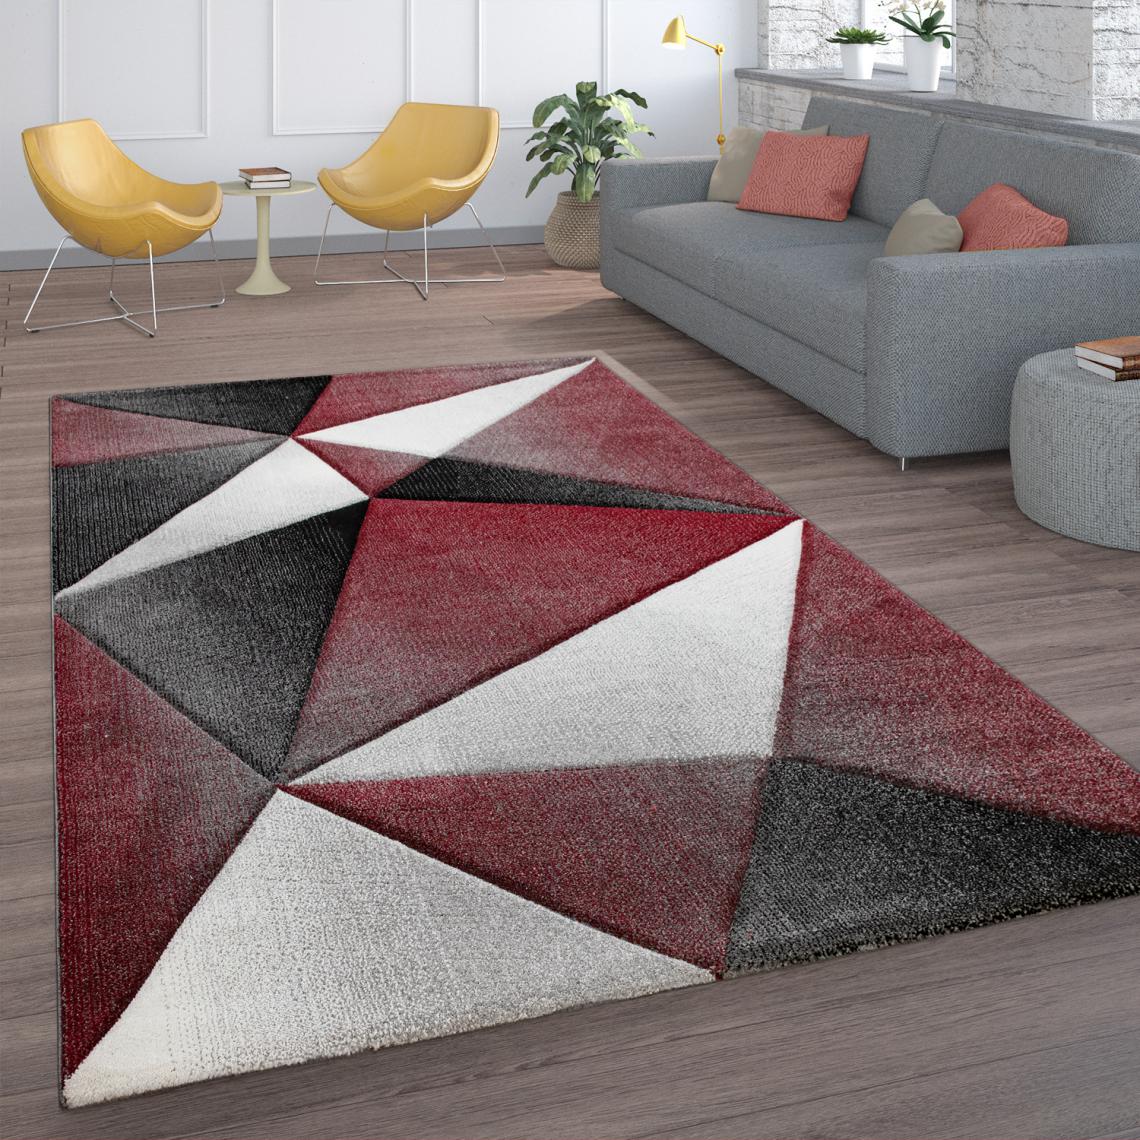 Paco-Home - Tapis De Salon Poils Ras Motif Géométrique Moderne Avec Esthétique 3D Gris Rouge - Tapis